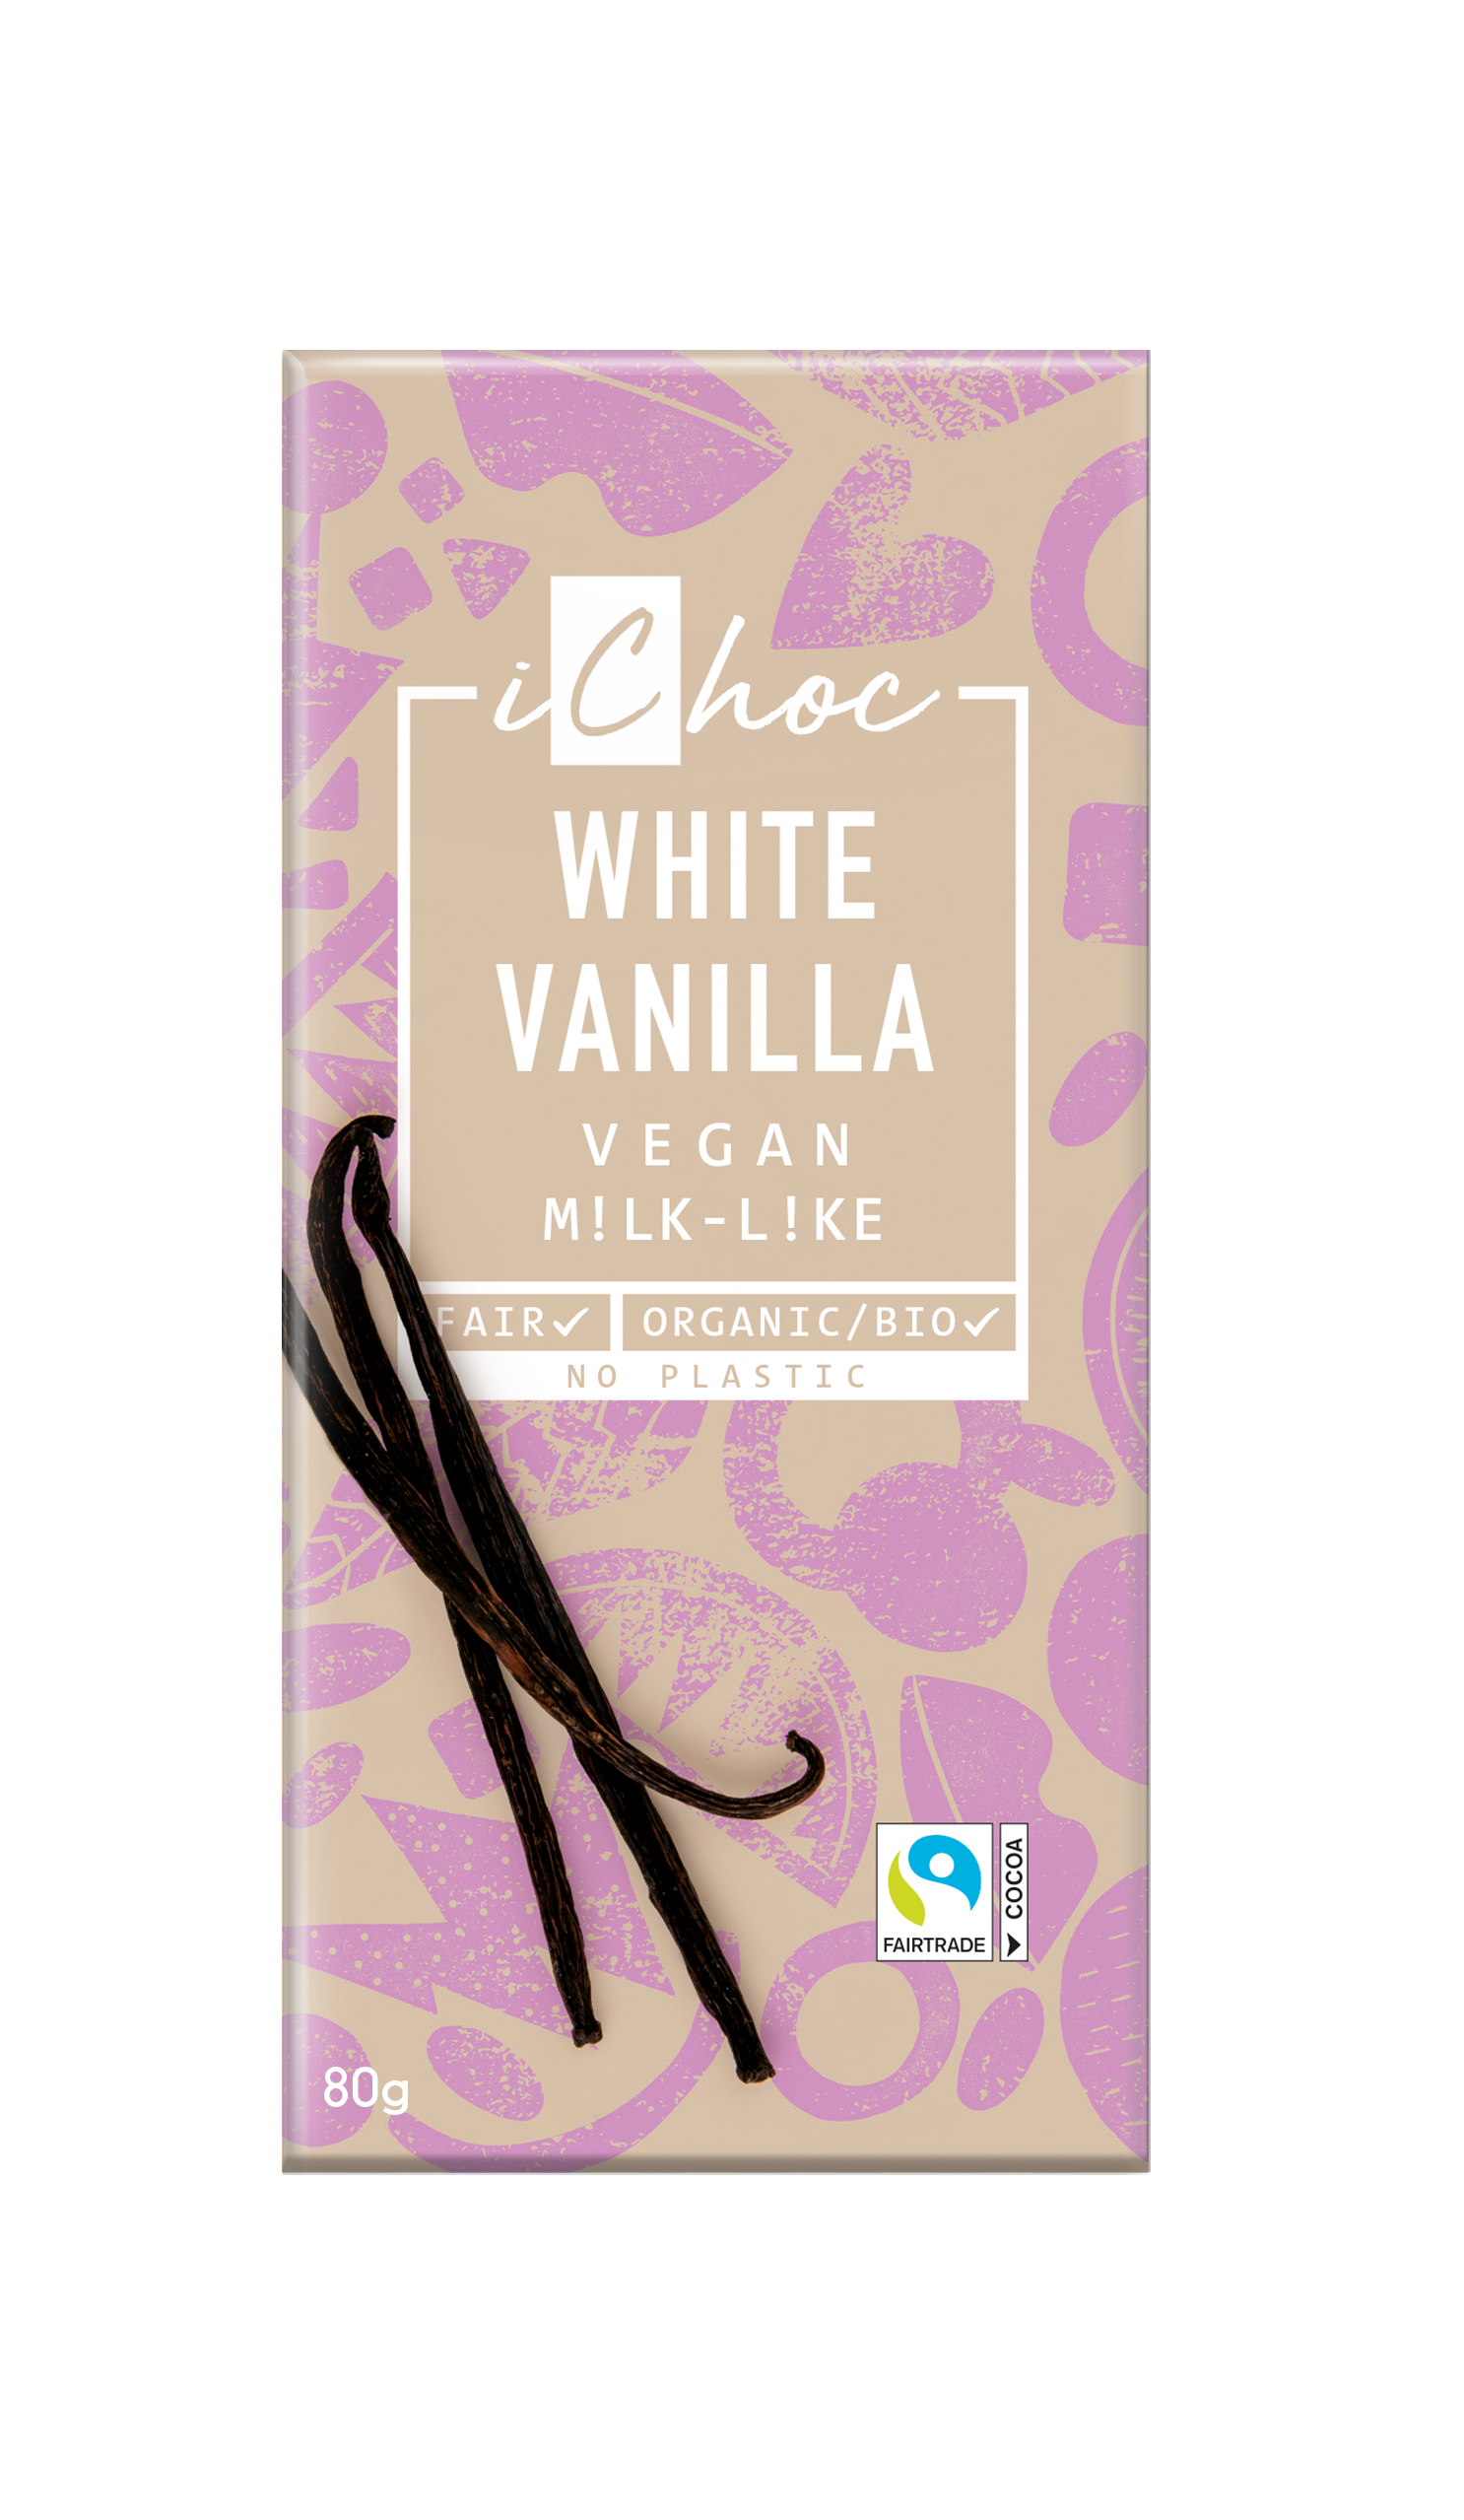 iChoc White Vanilla Vegan 80g